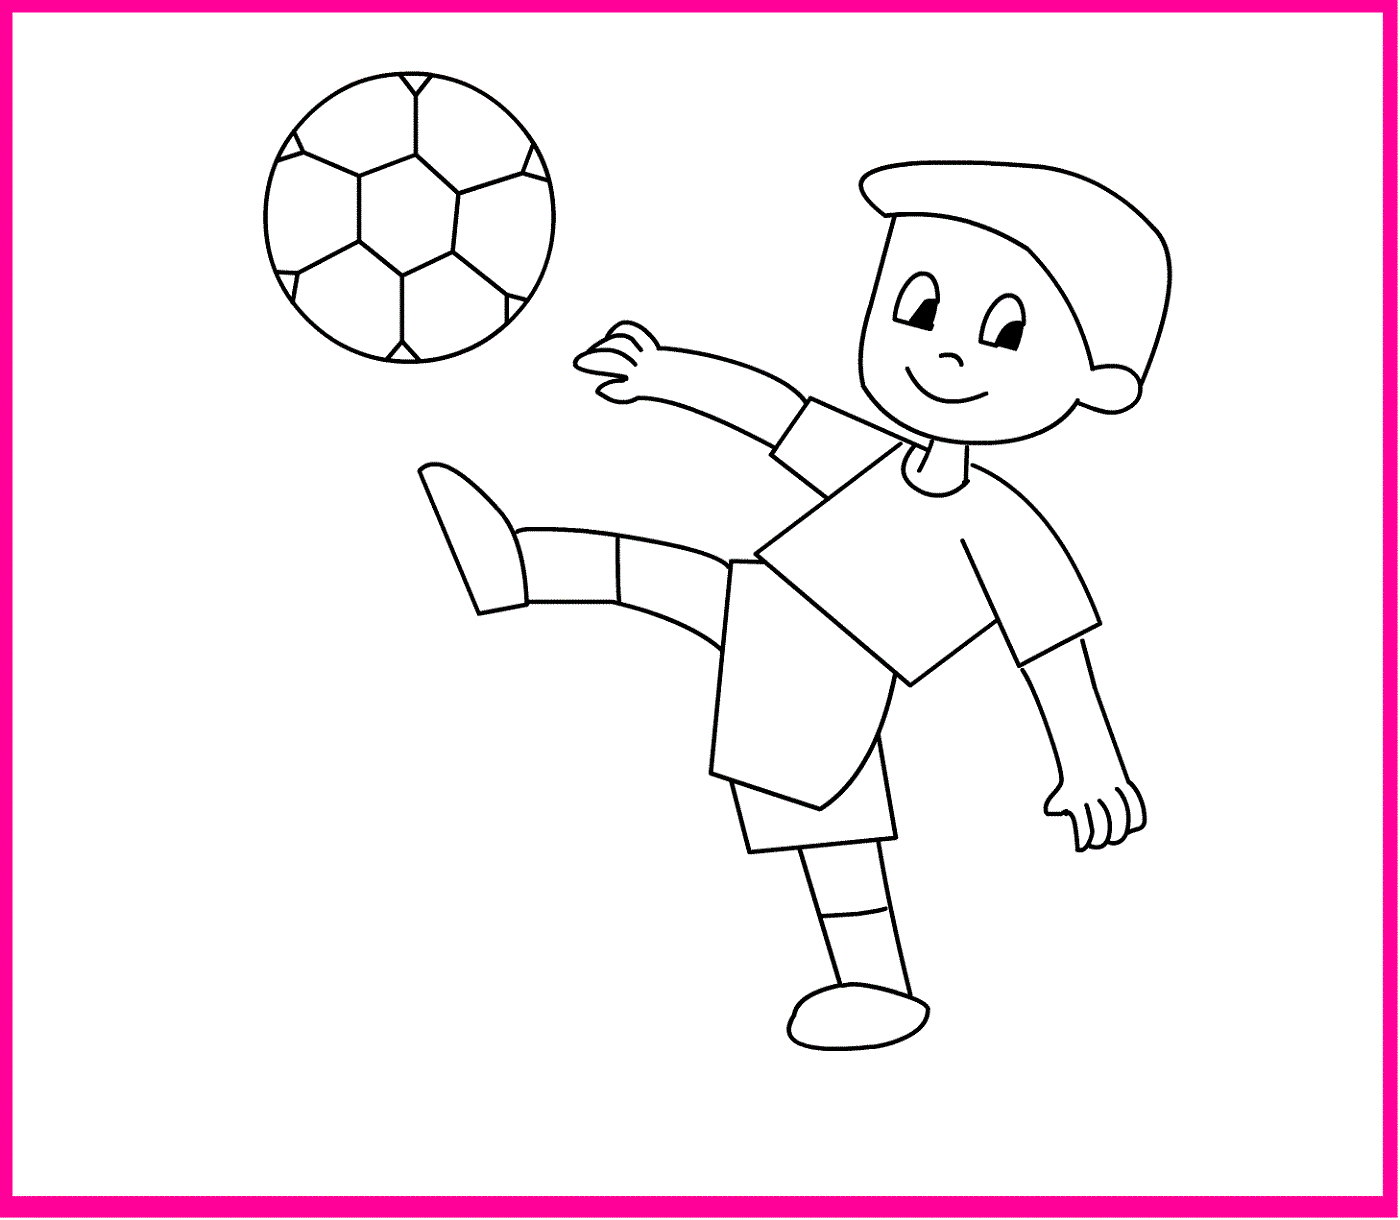 Раскраски для детсада игра в футбол